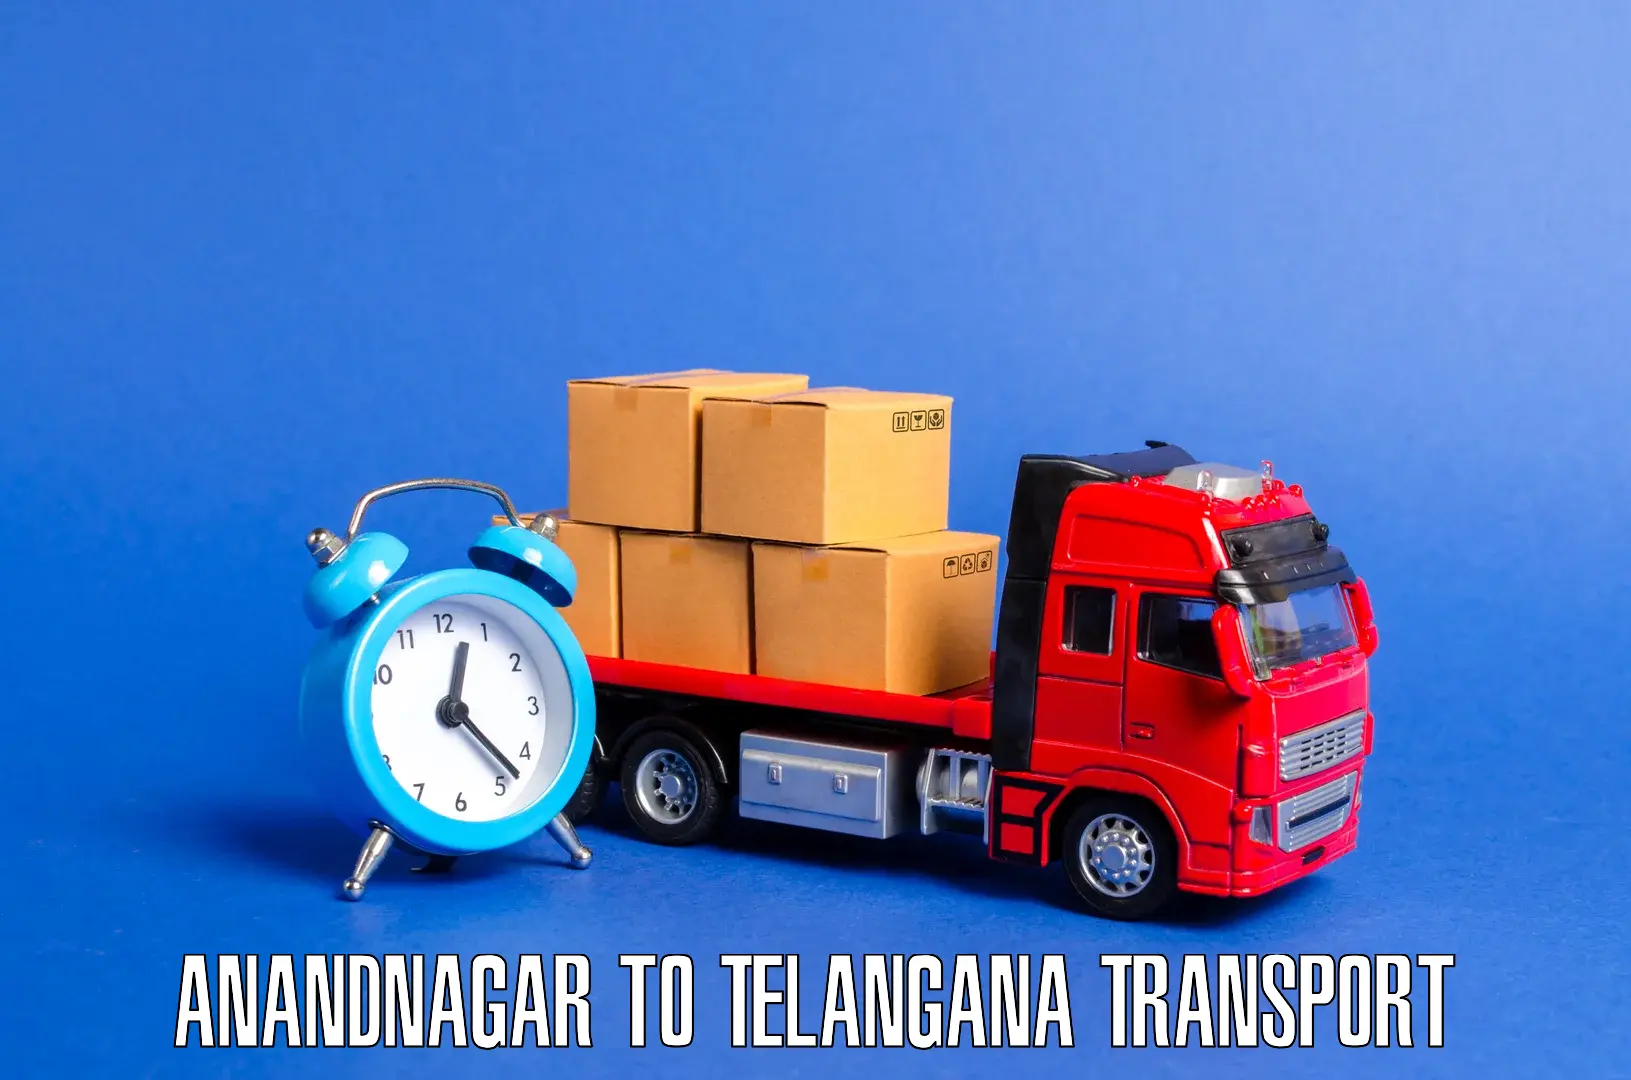 Pick up transport service Anandnagar to Sadashivpet